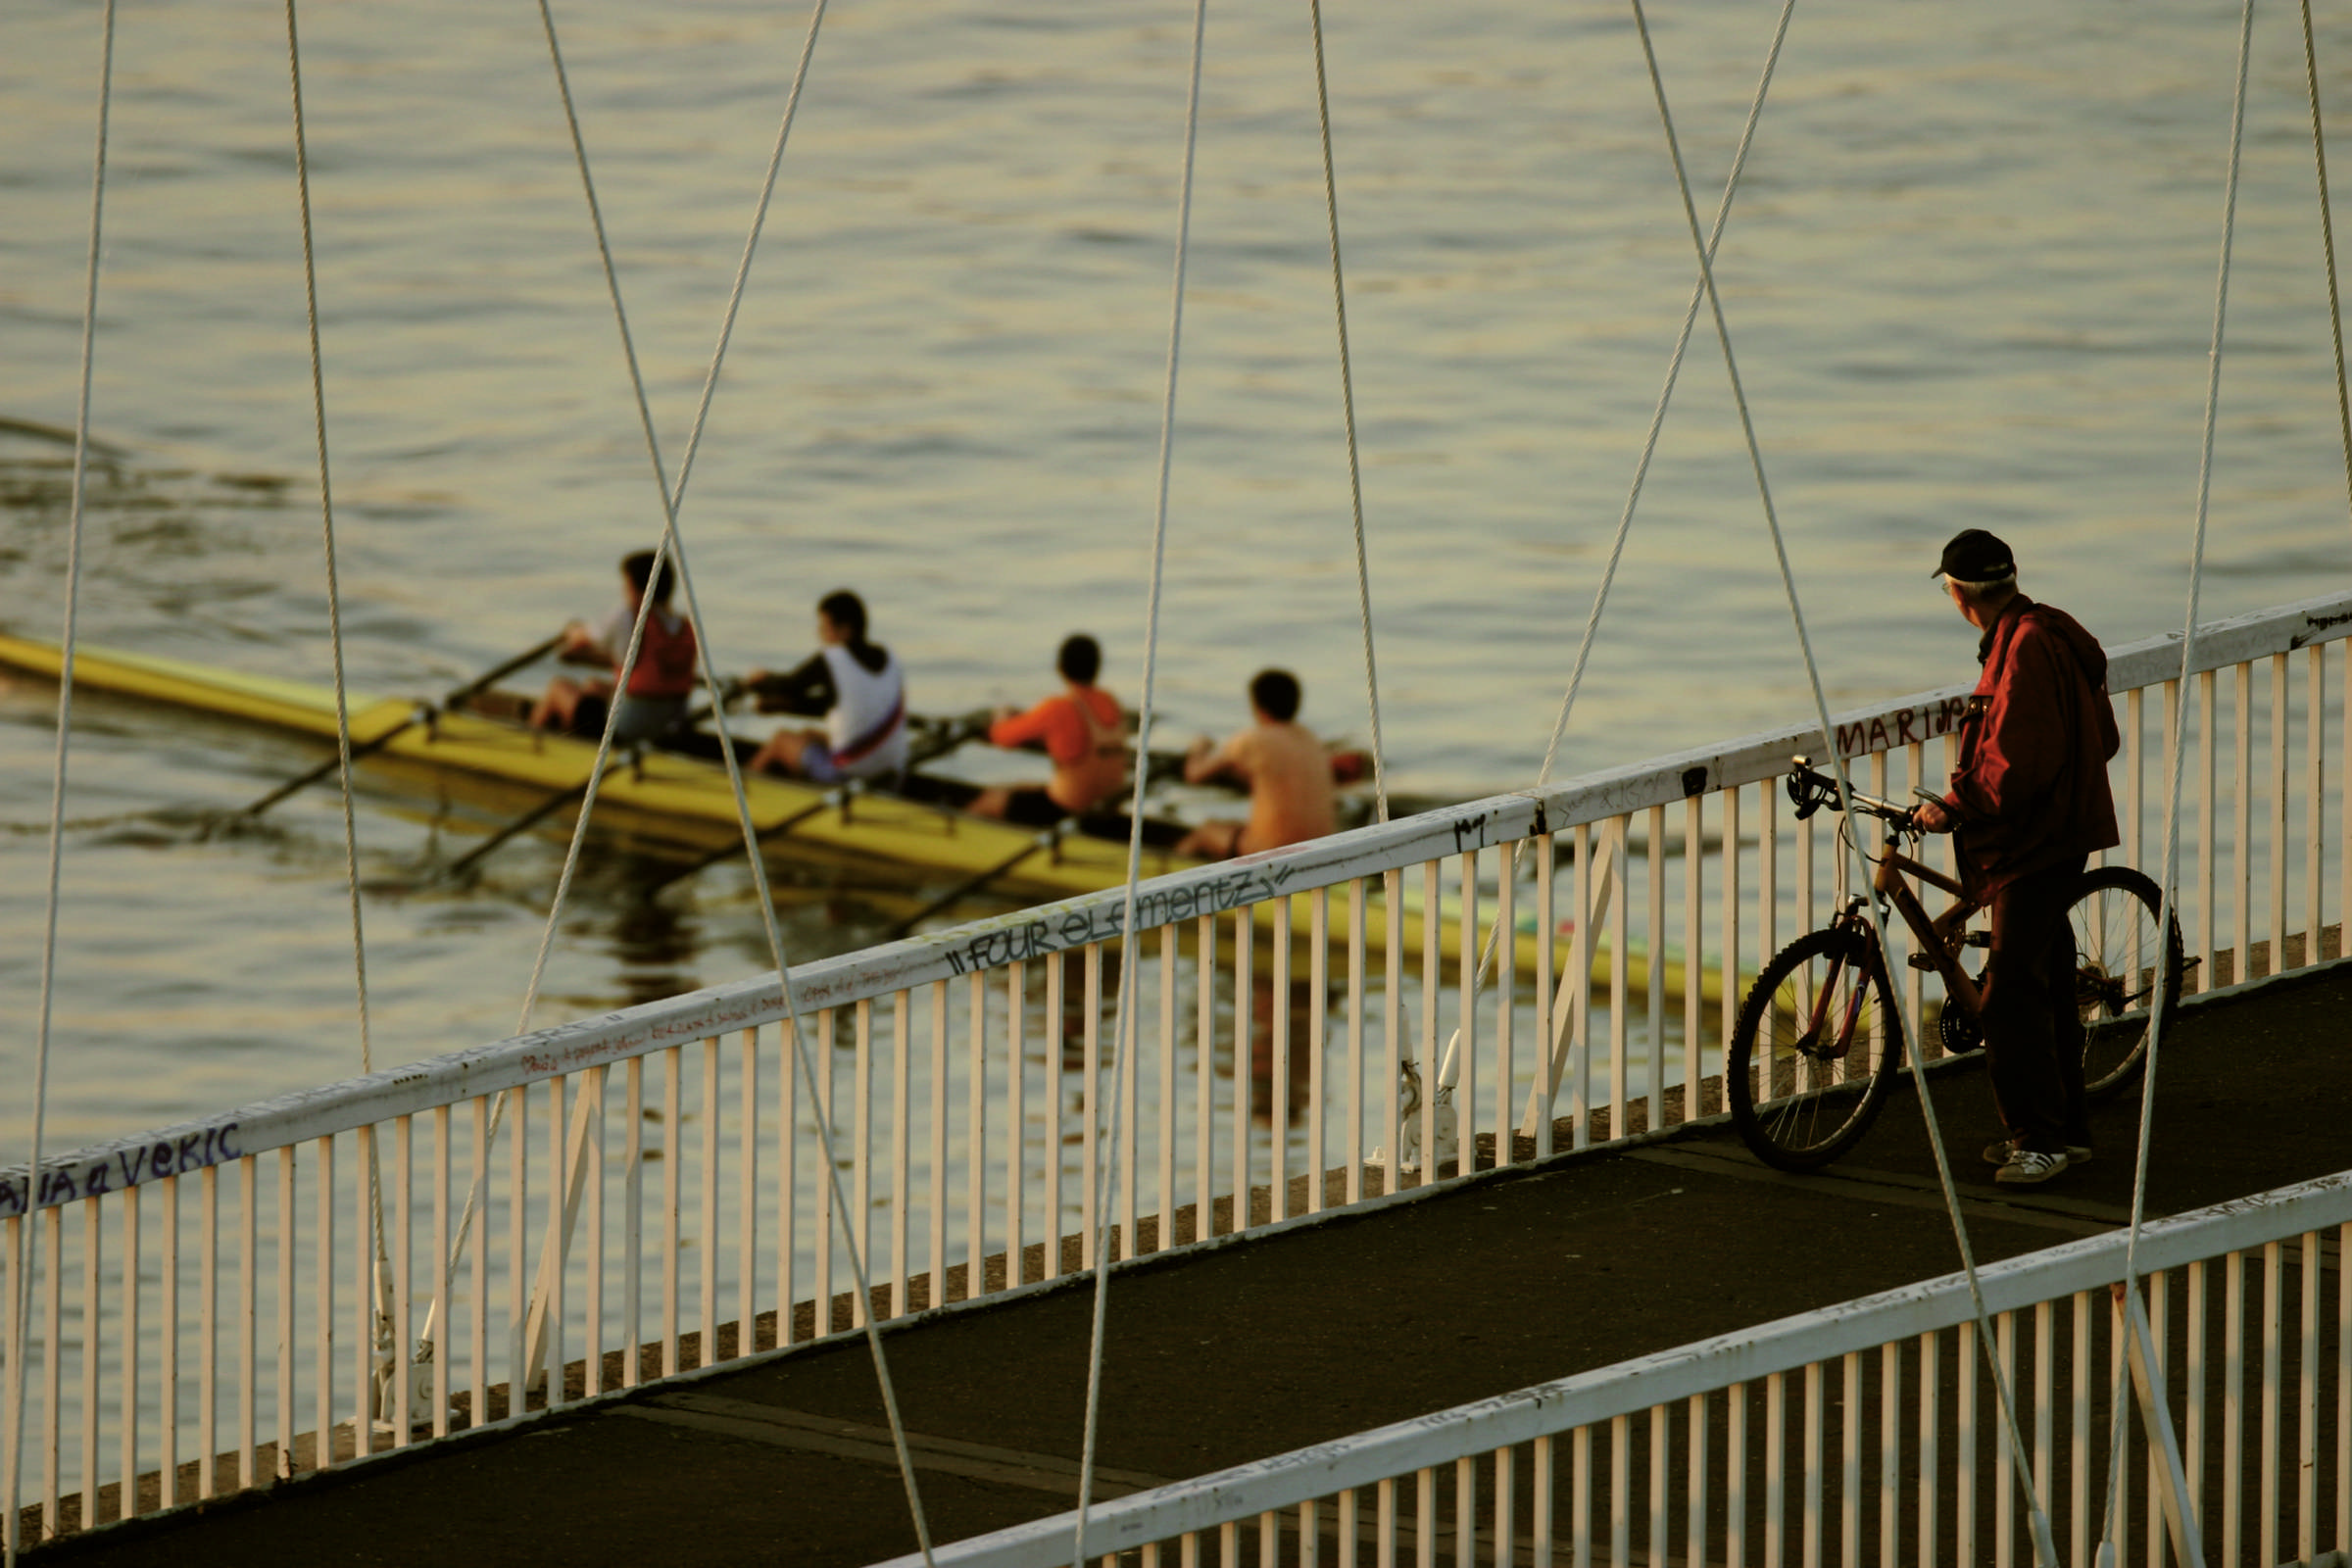 Rowing at Drava river